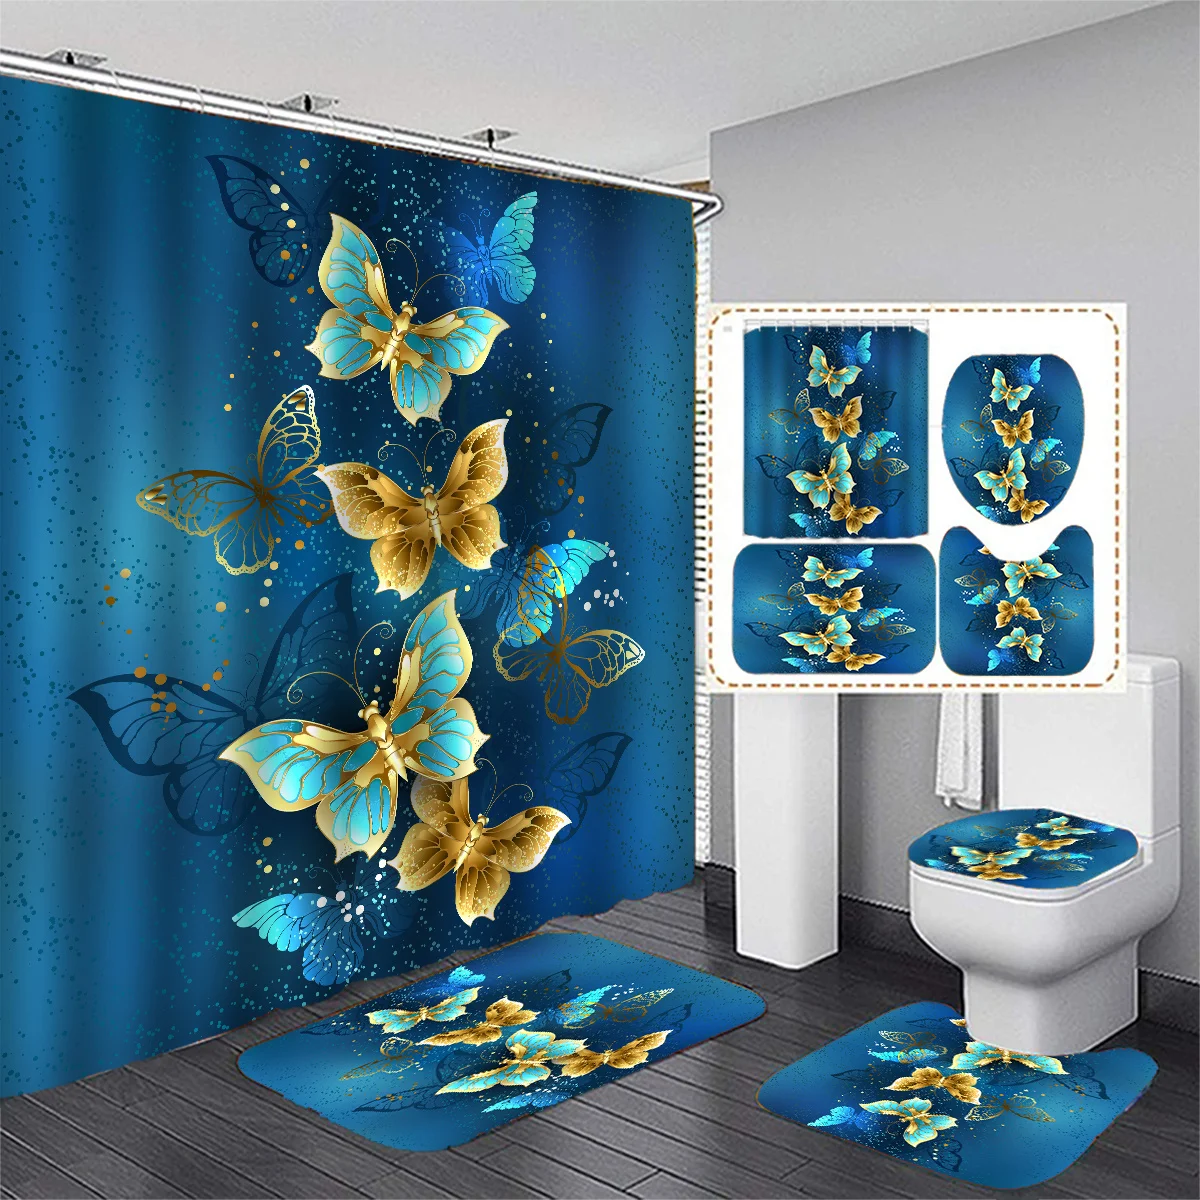 

Сине-золотистая душевая занавеска в форме бабочки, набор с искусственной крышкой, коврик для ванной, водонепроницаемая занавеска из полиэстера с 12 пластиковыми крючками